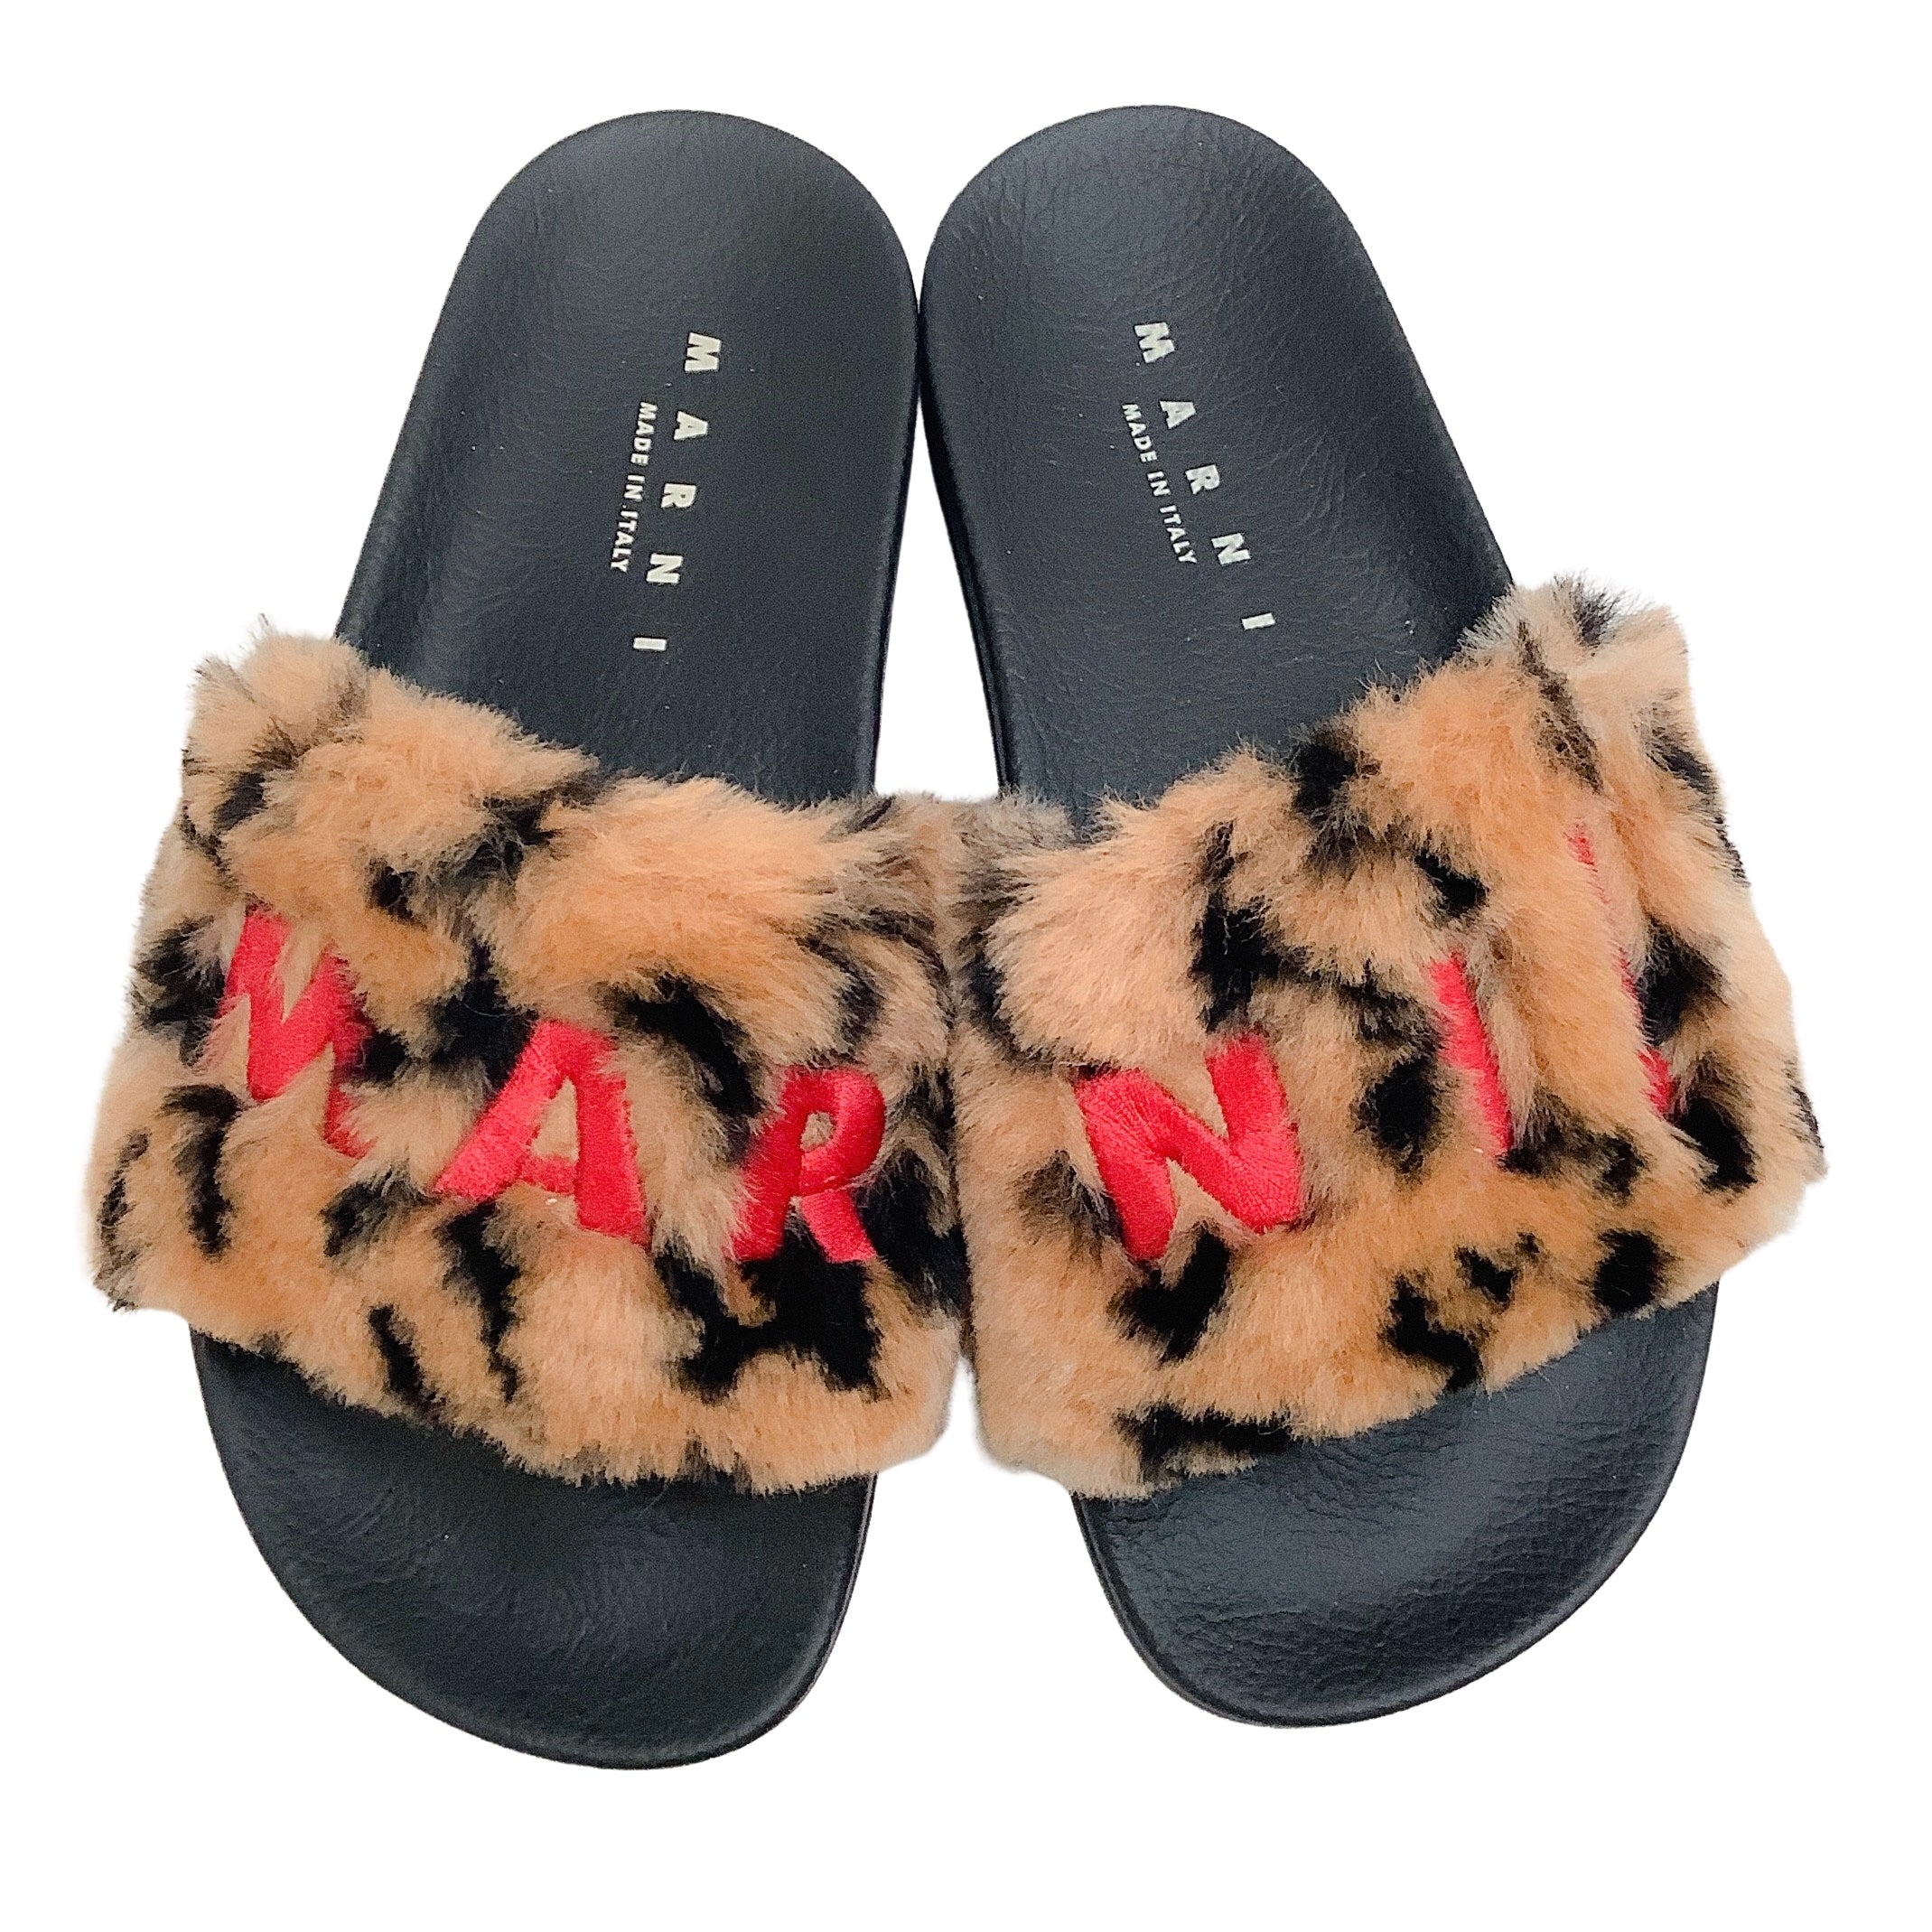 Marni Camel / Black Leopard Faux Fur Embroidered Logo Slide Sandals